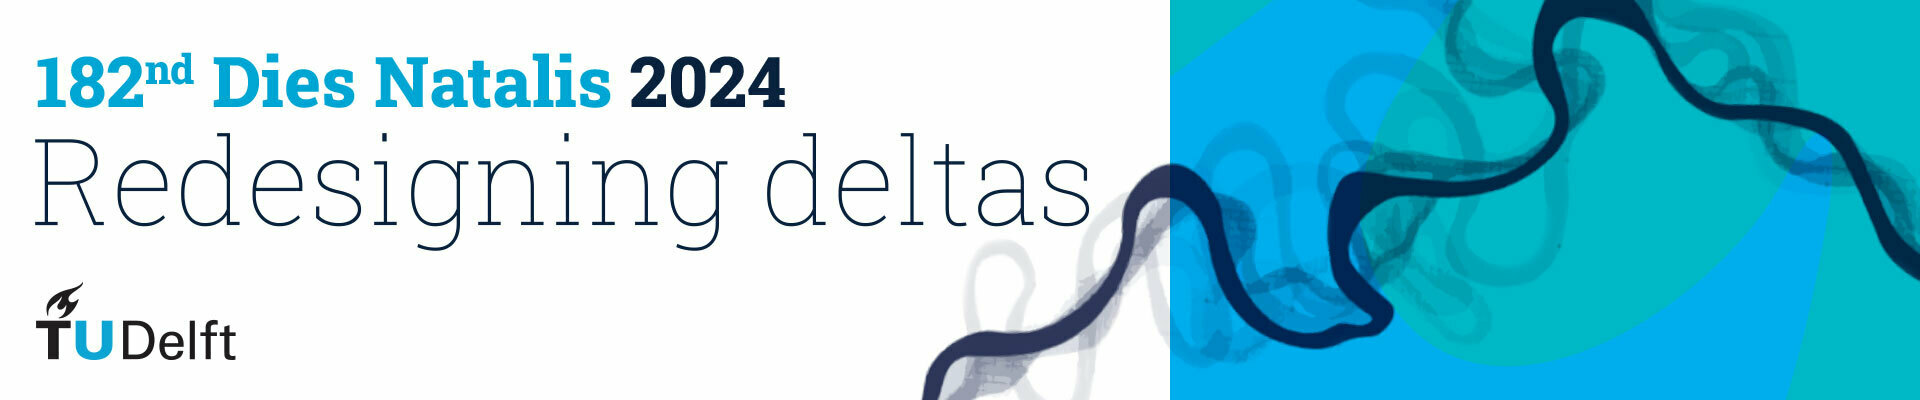 Delta Innovation Day